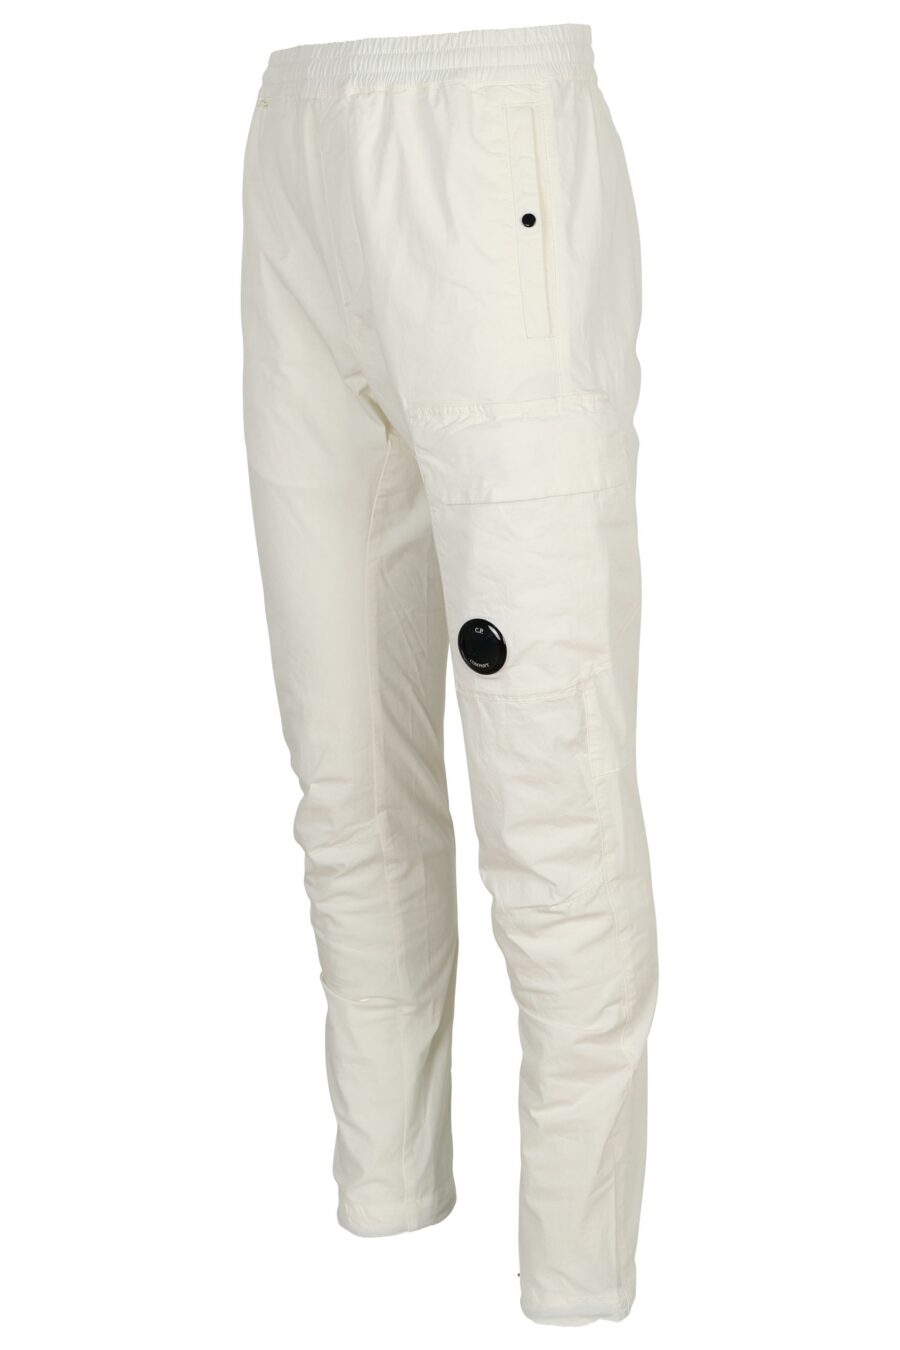 Pantalon cargo blanc avec mini-logo Lens - 7620943804751 1